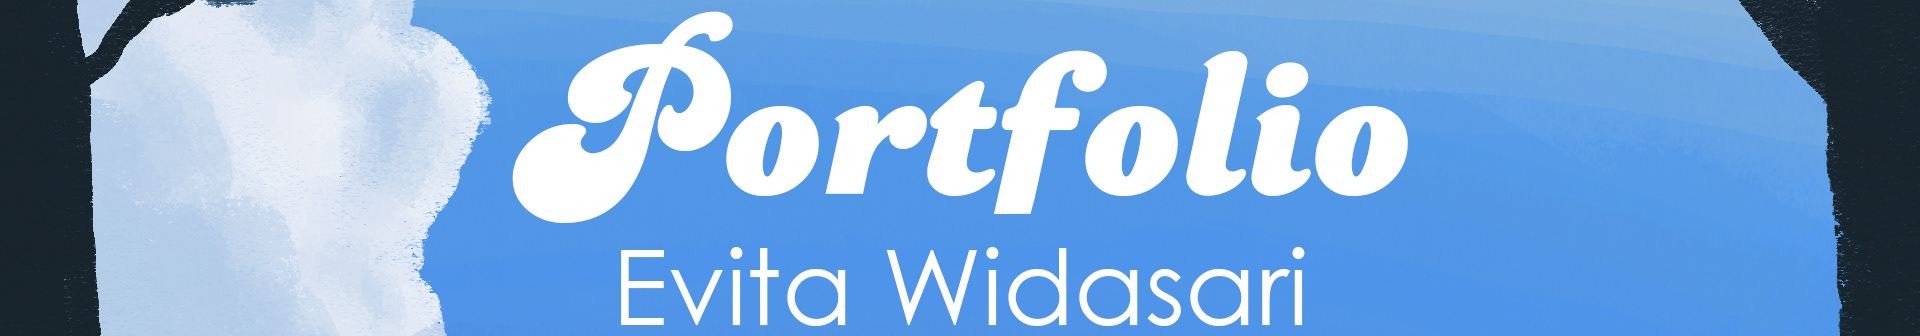 Evita Widasari's profile banner